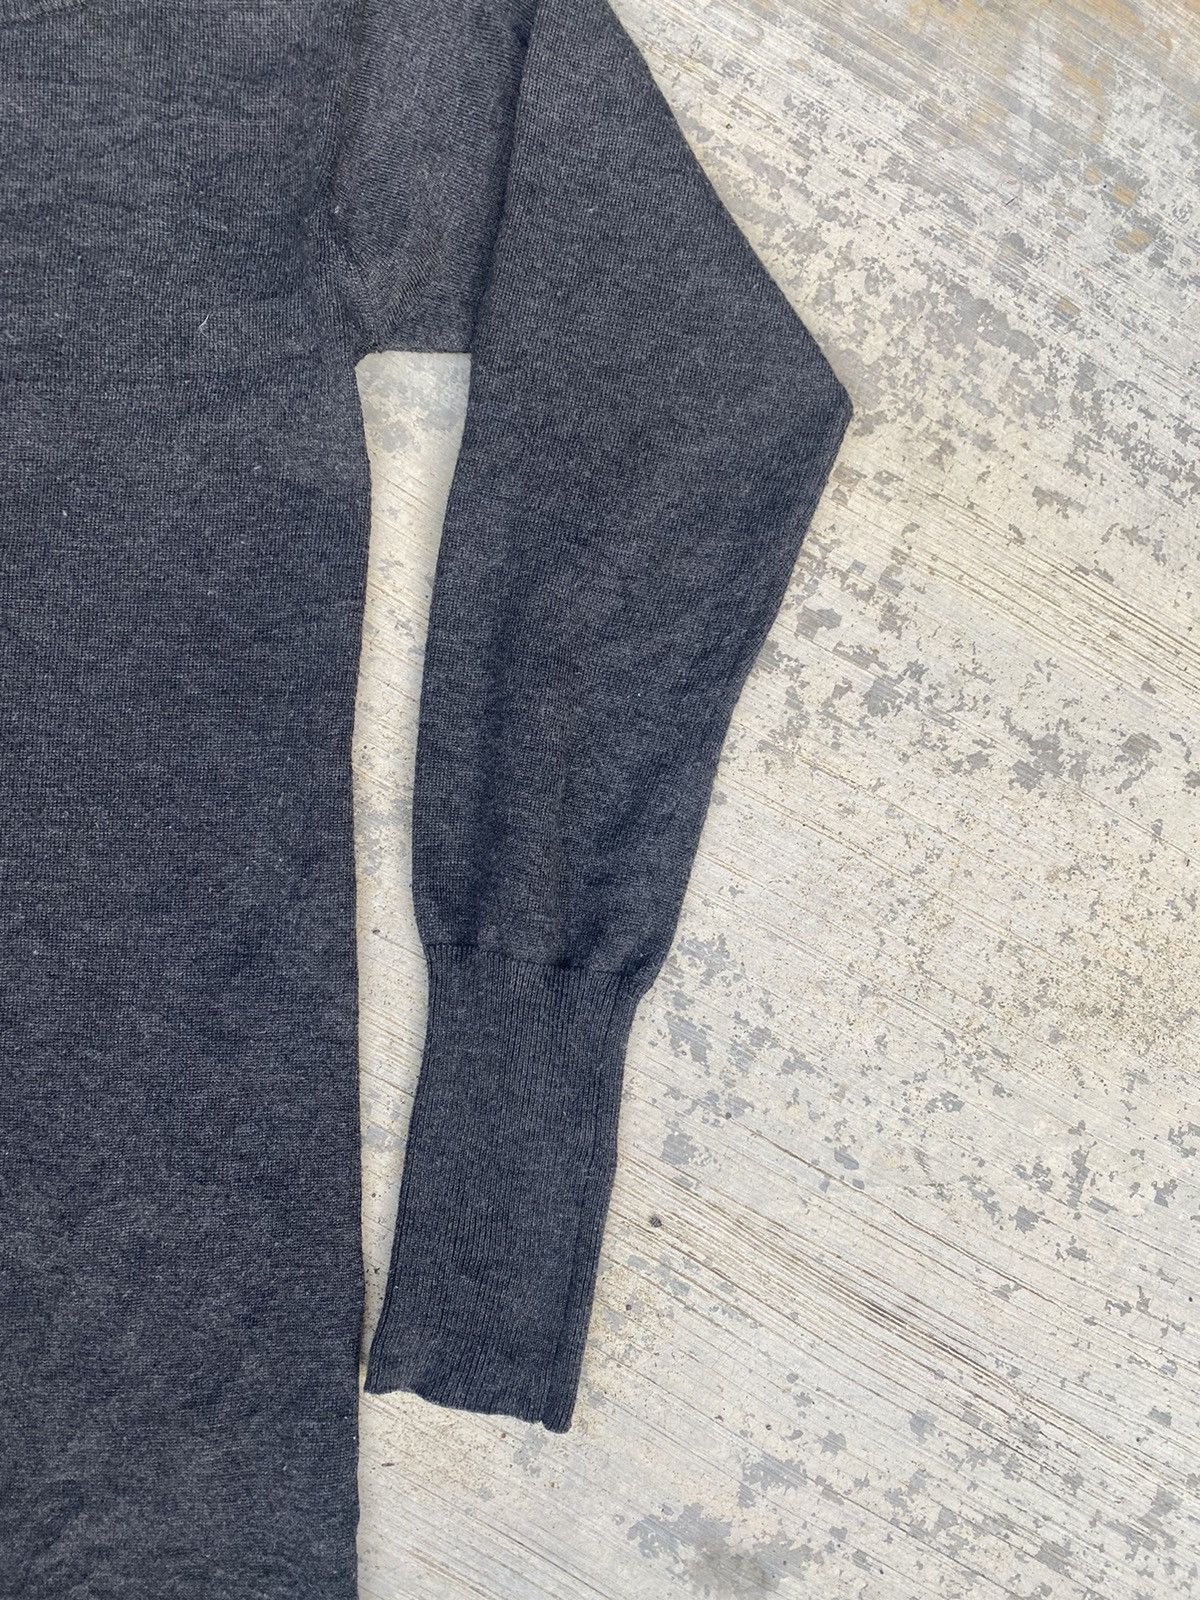 Vintage ⚡️Final drop⚡️ Adam et Rope turtleneck sweater long dresses Size S / US 4 / IT 40 - 5 Thumbnail